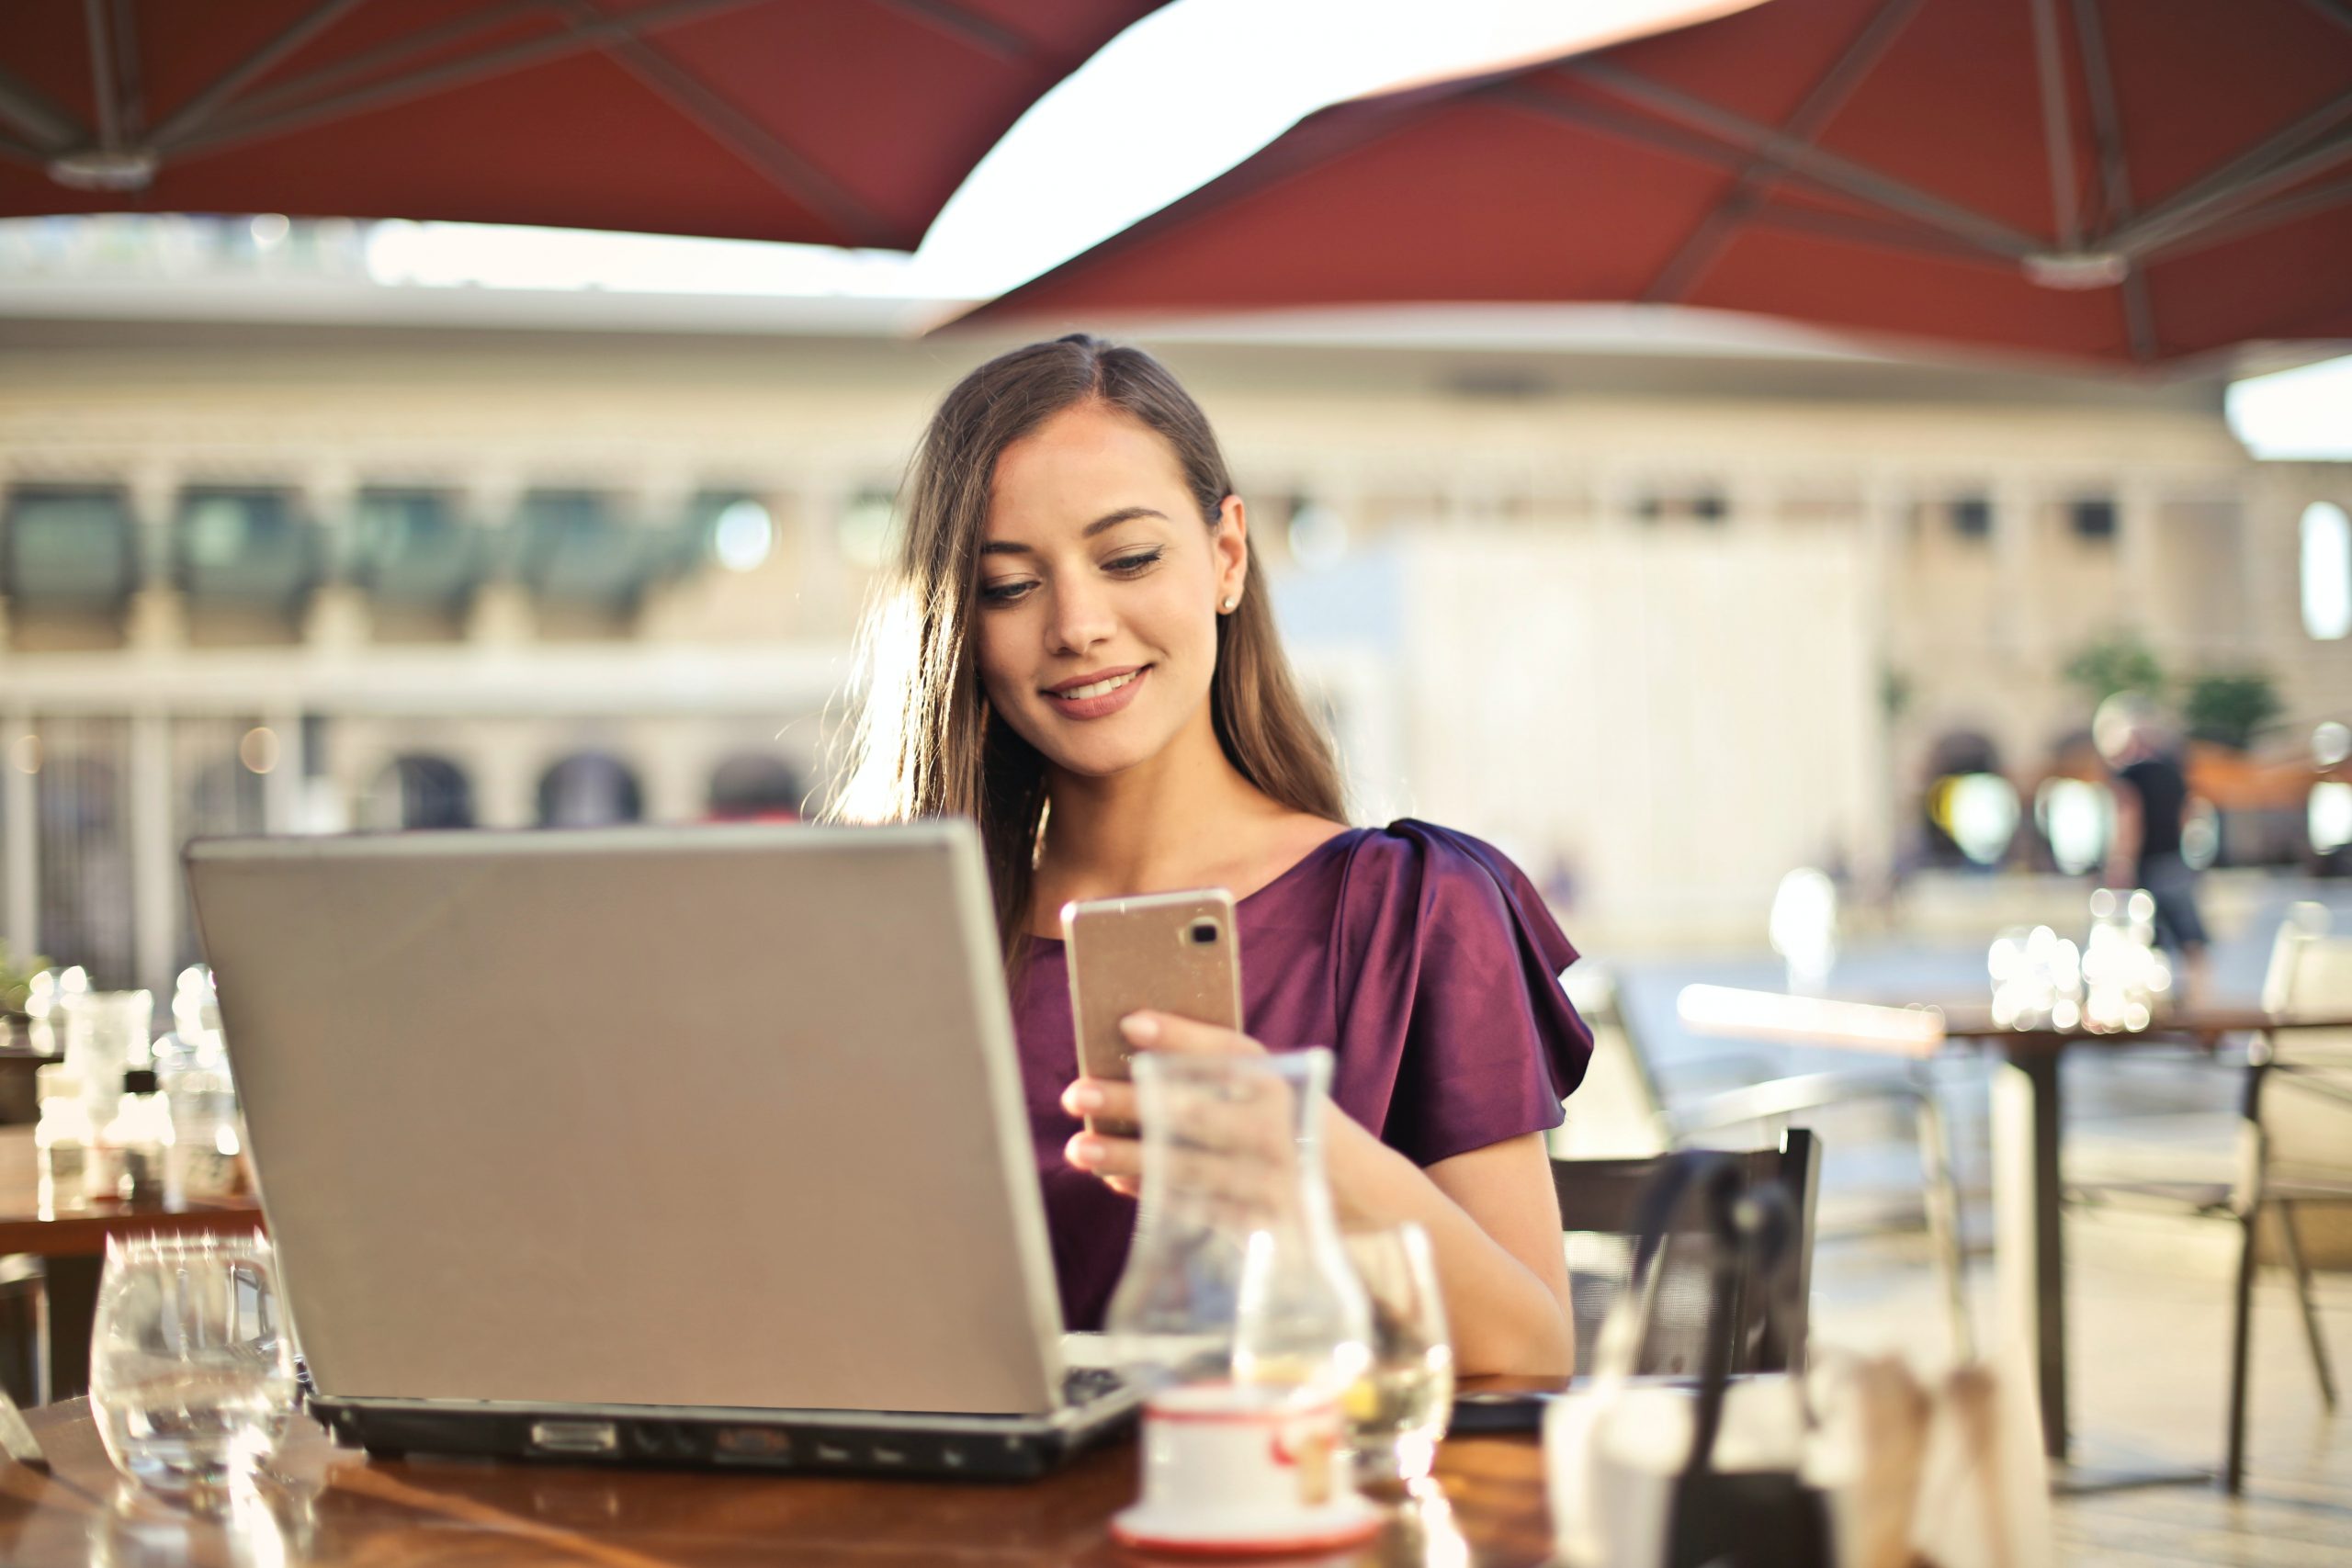 Eine konzentrierte junge Frau in einem pflaumenfarbenen Oberteil, die an einem Außentisch eines Cafés auf ihr Smartphone schaut und gleichzeitig an ihrem Laptop arbeitet, möglicherweise um Online-Kredite zu recherchieren oder ihre Finanzen zu verwalten.